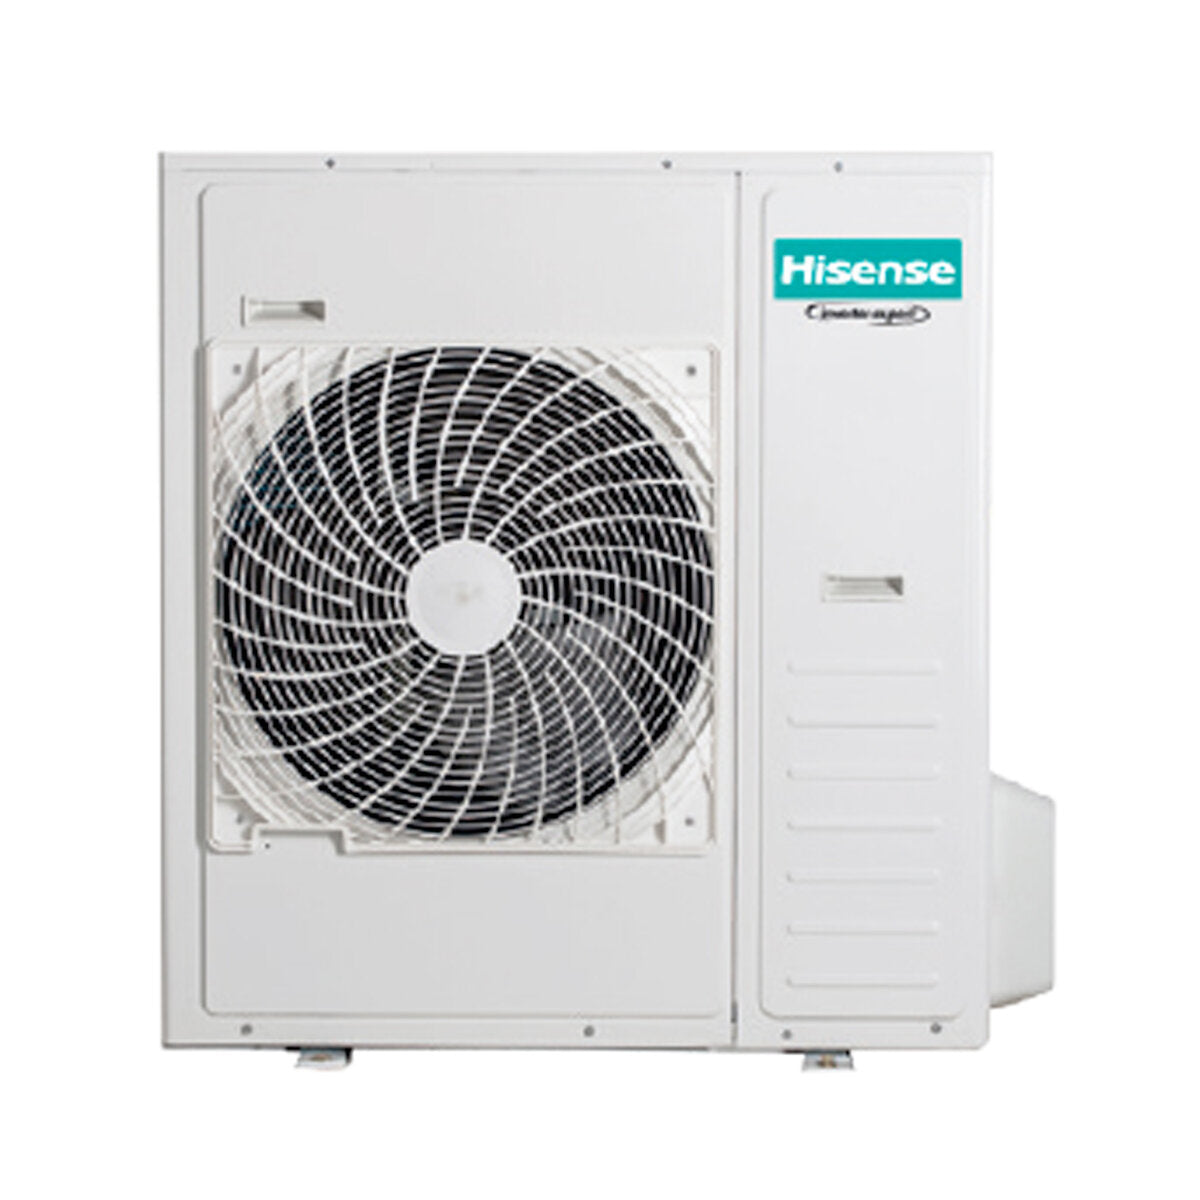 Hisense Hi-Comfort penta climatiseur split 9000+9000+9000+9000+12000 BTU wifi inverter unité extérieure 12,5 kW